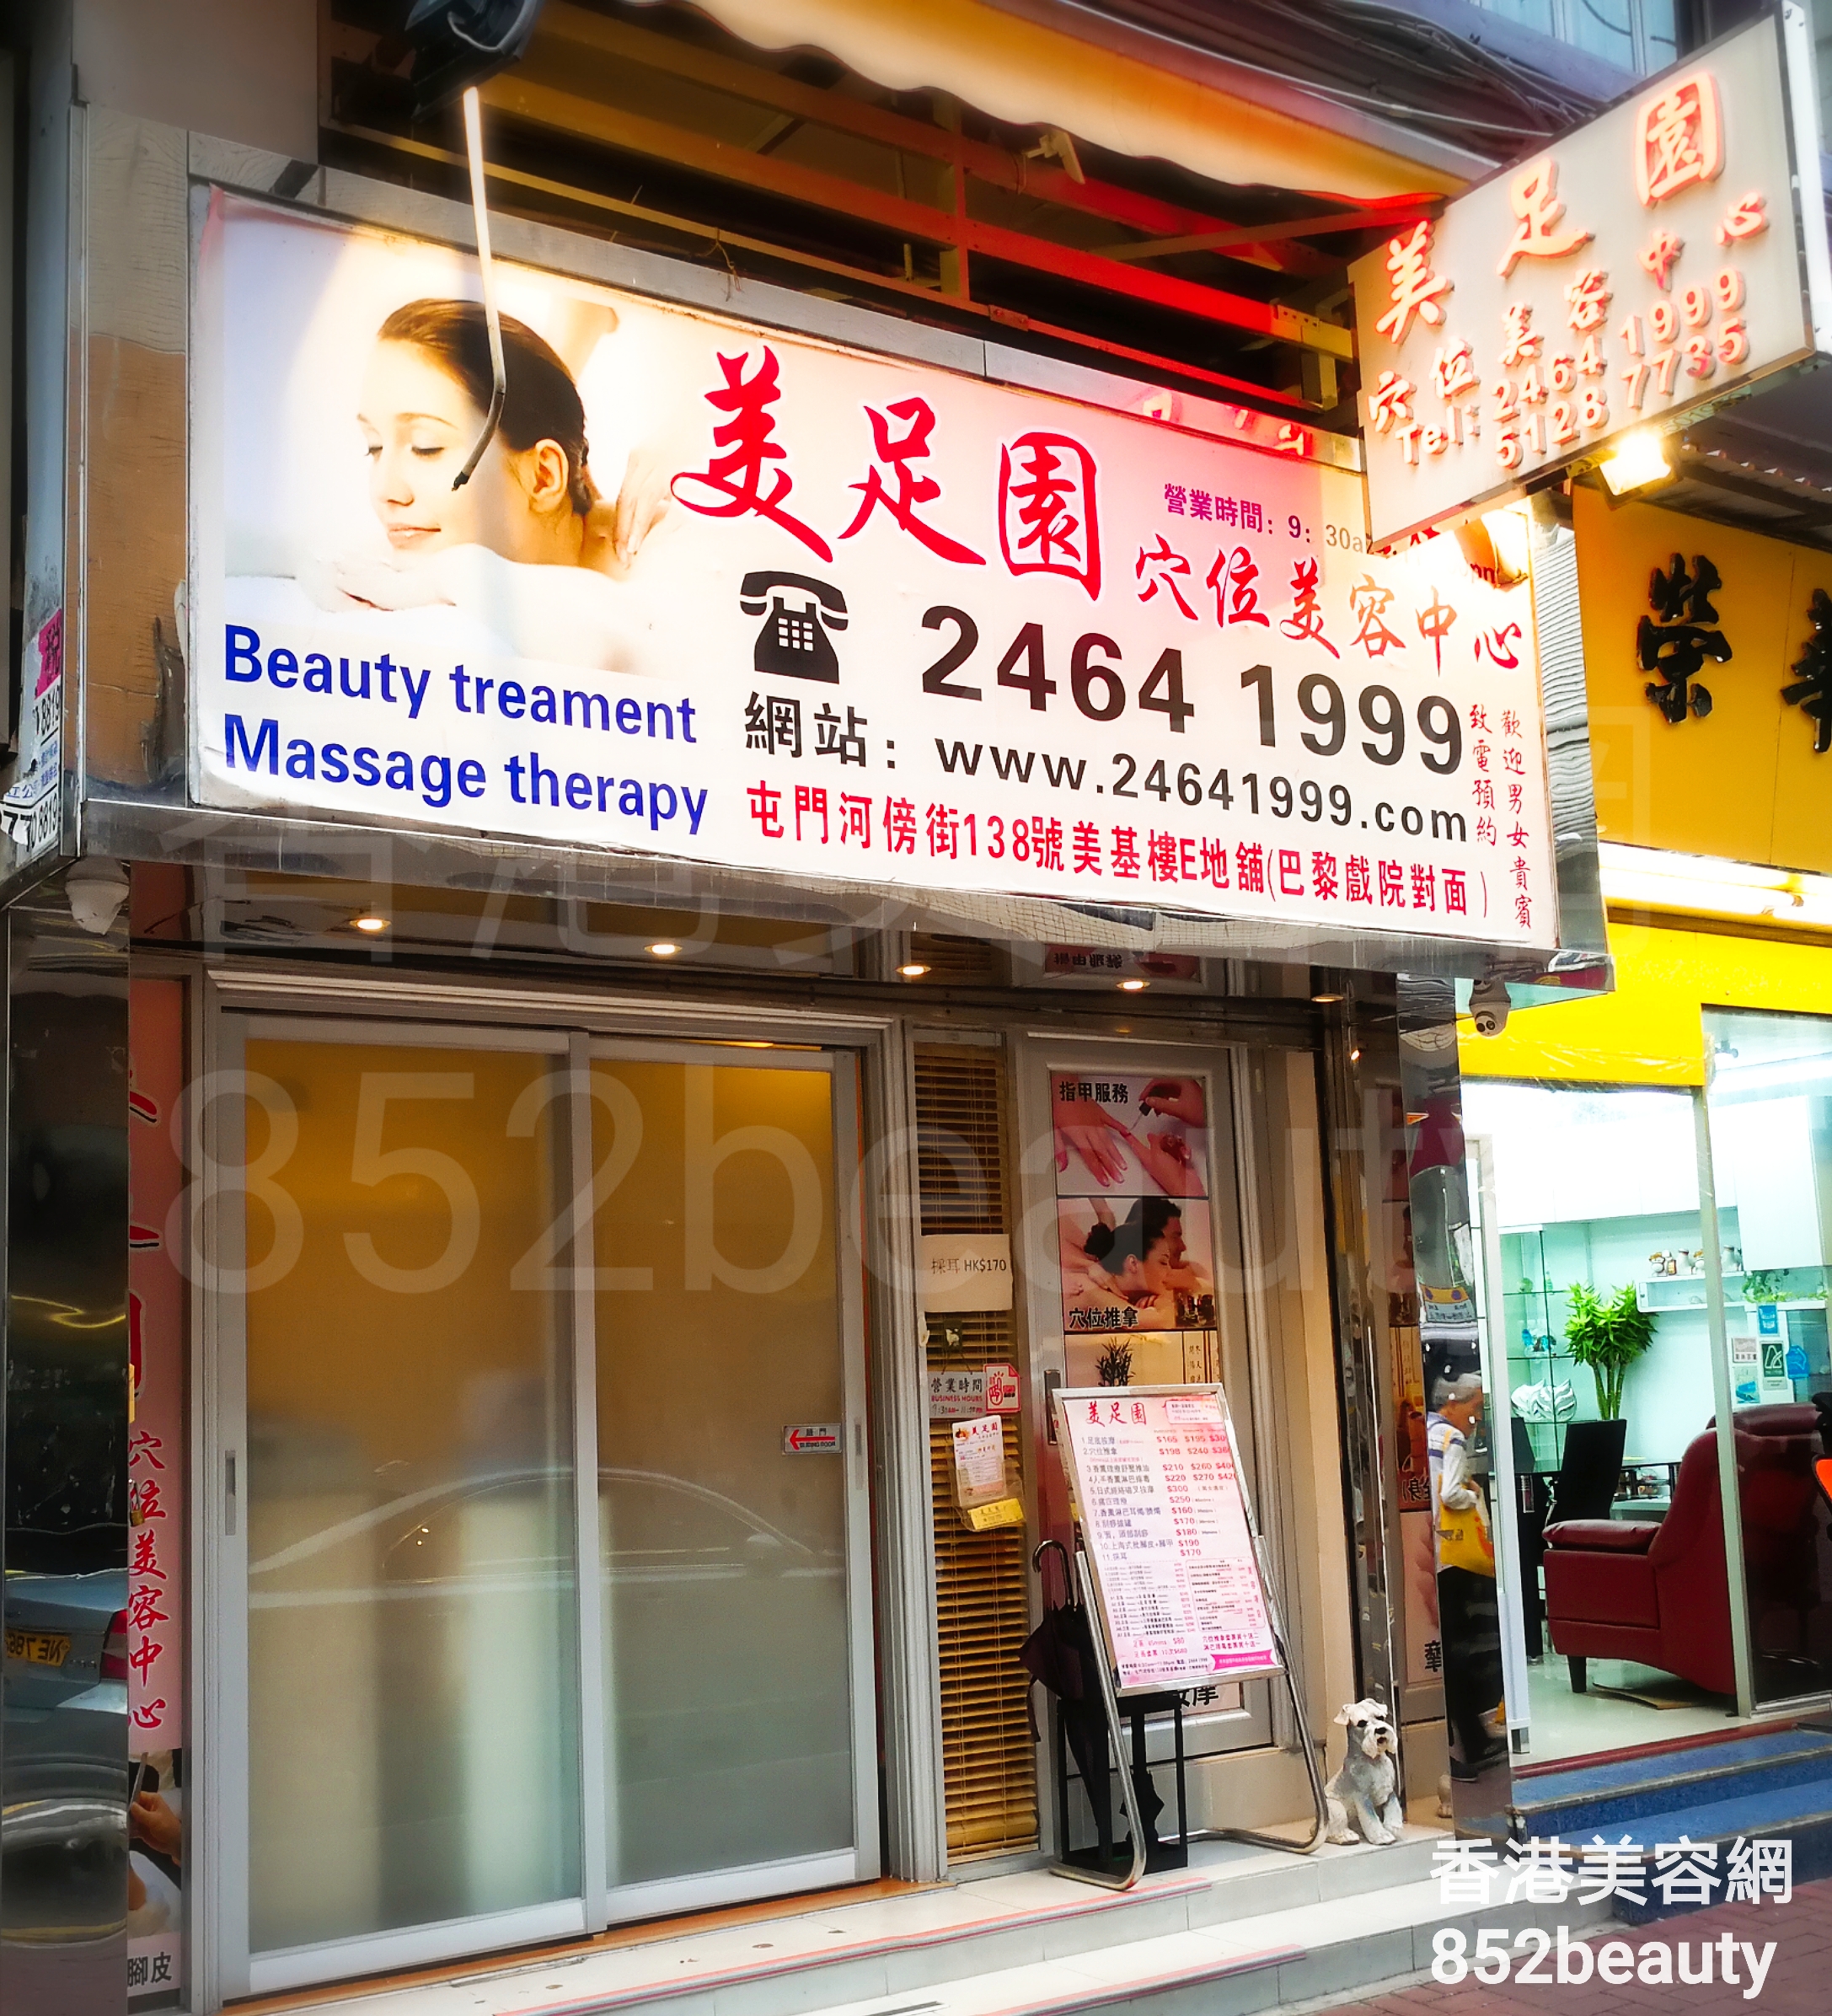 香港美容網 Hong Kong Beauty Salon 美容院 / 美容師: 美足園 穴位美容中心